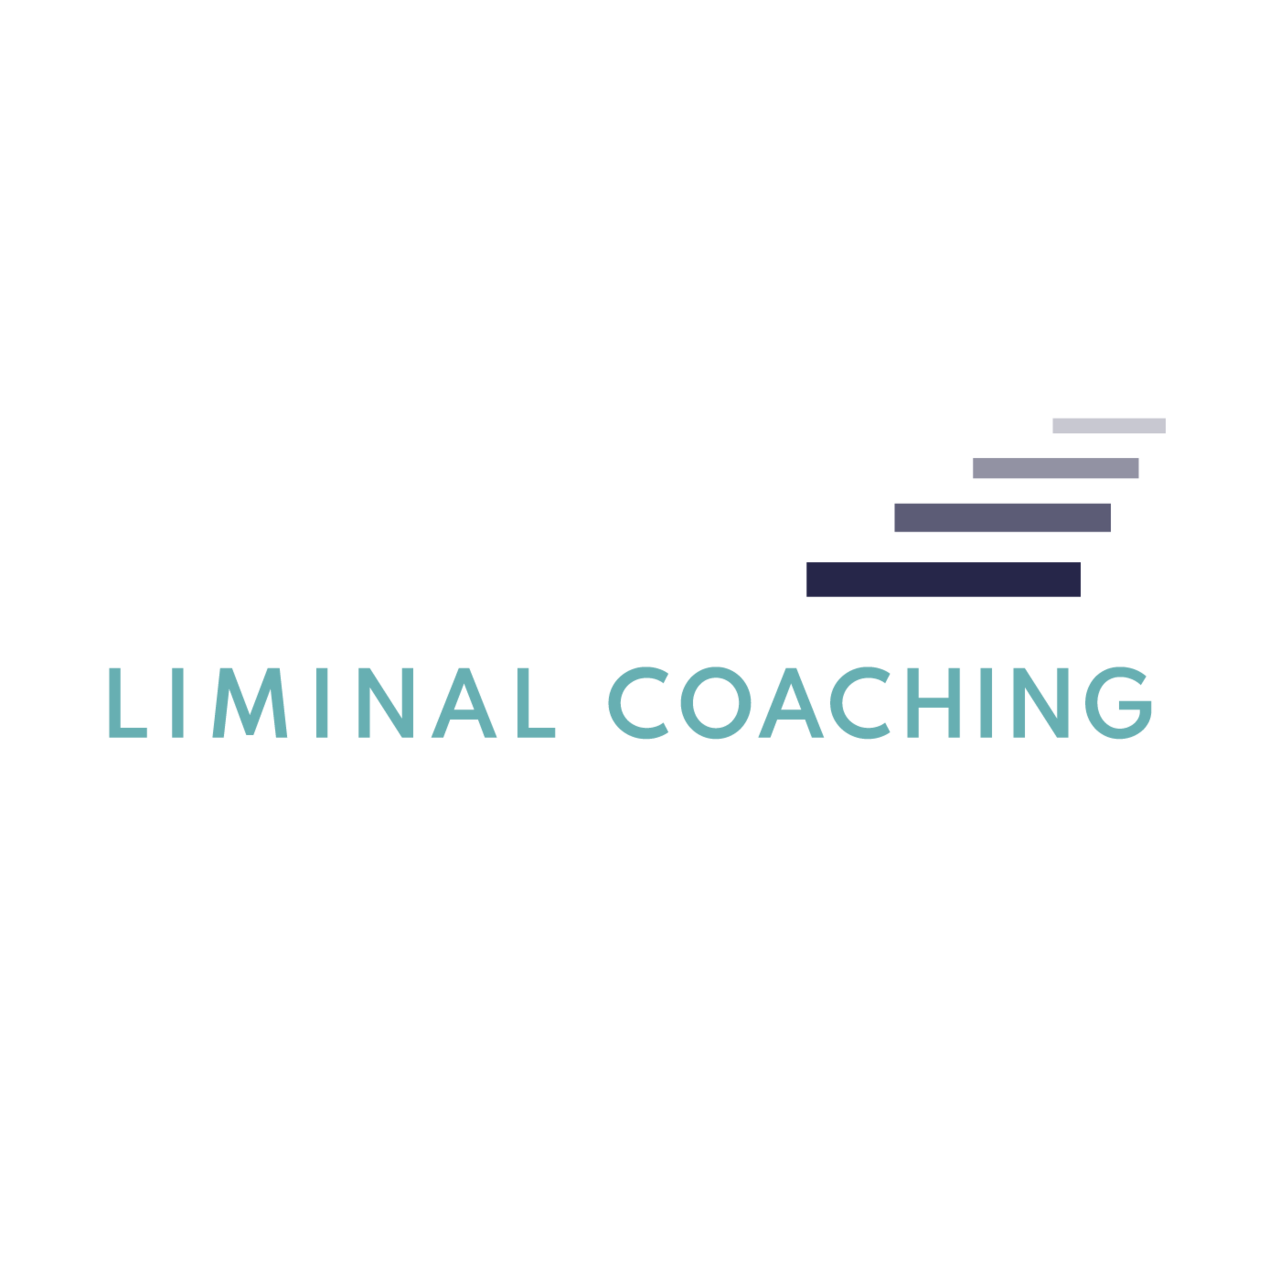 Liminal Coaching